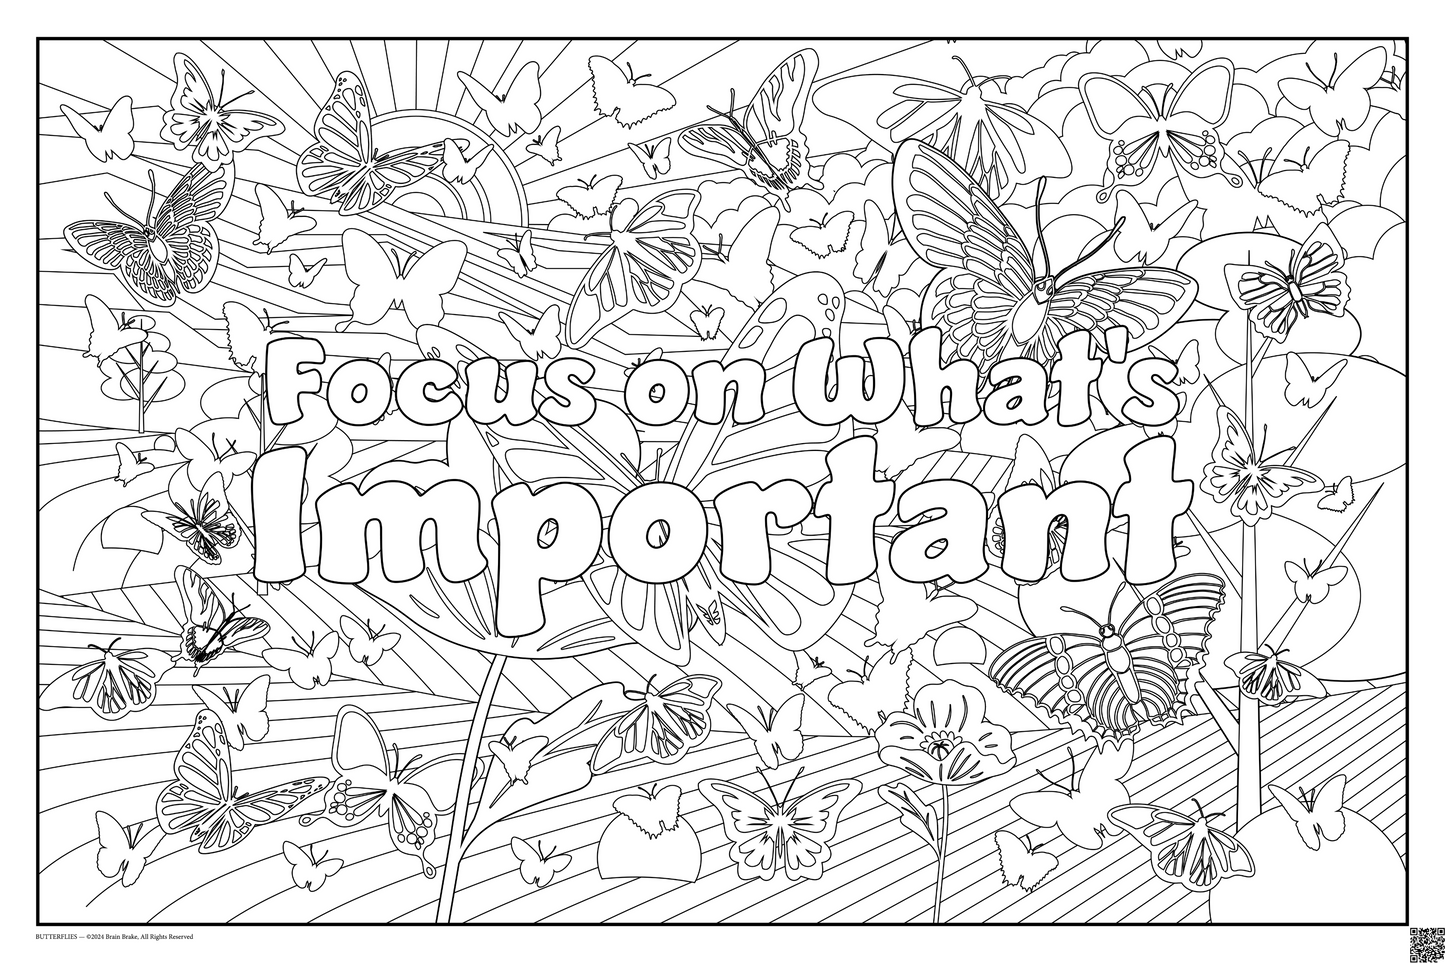 Calming Corner: Focus on What's Important